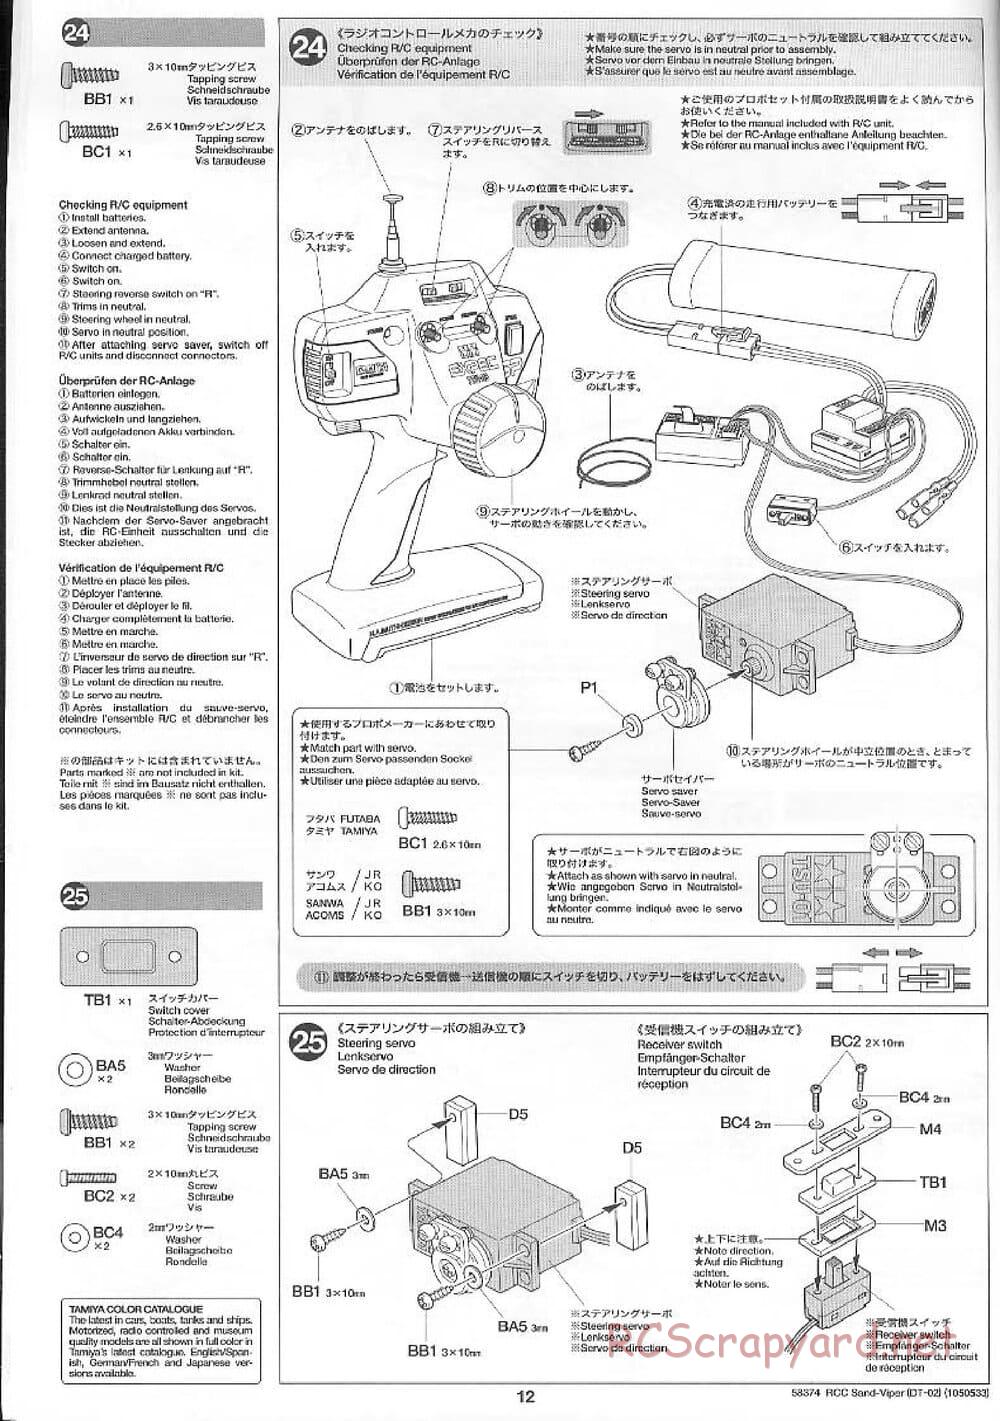 Tamiya - Sand Viper Chassis - Manual - Page 12